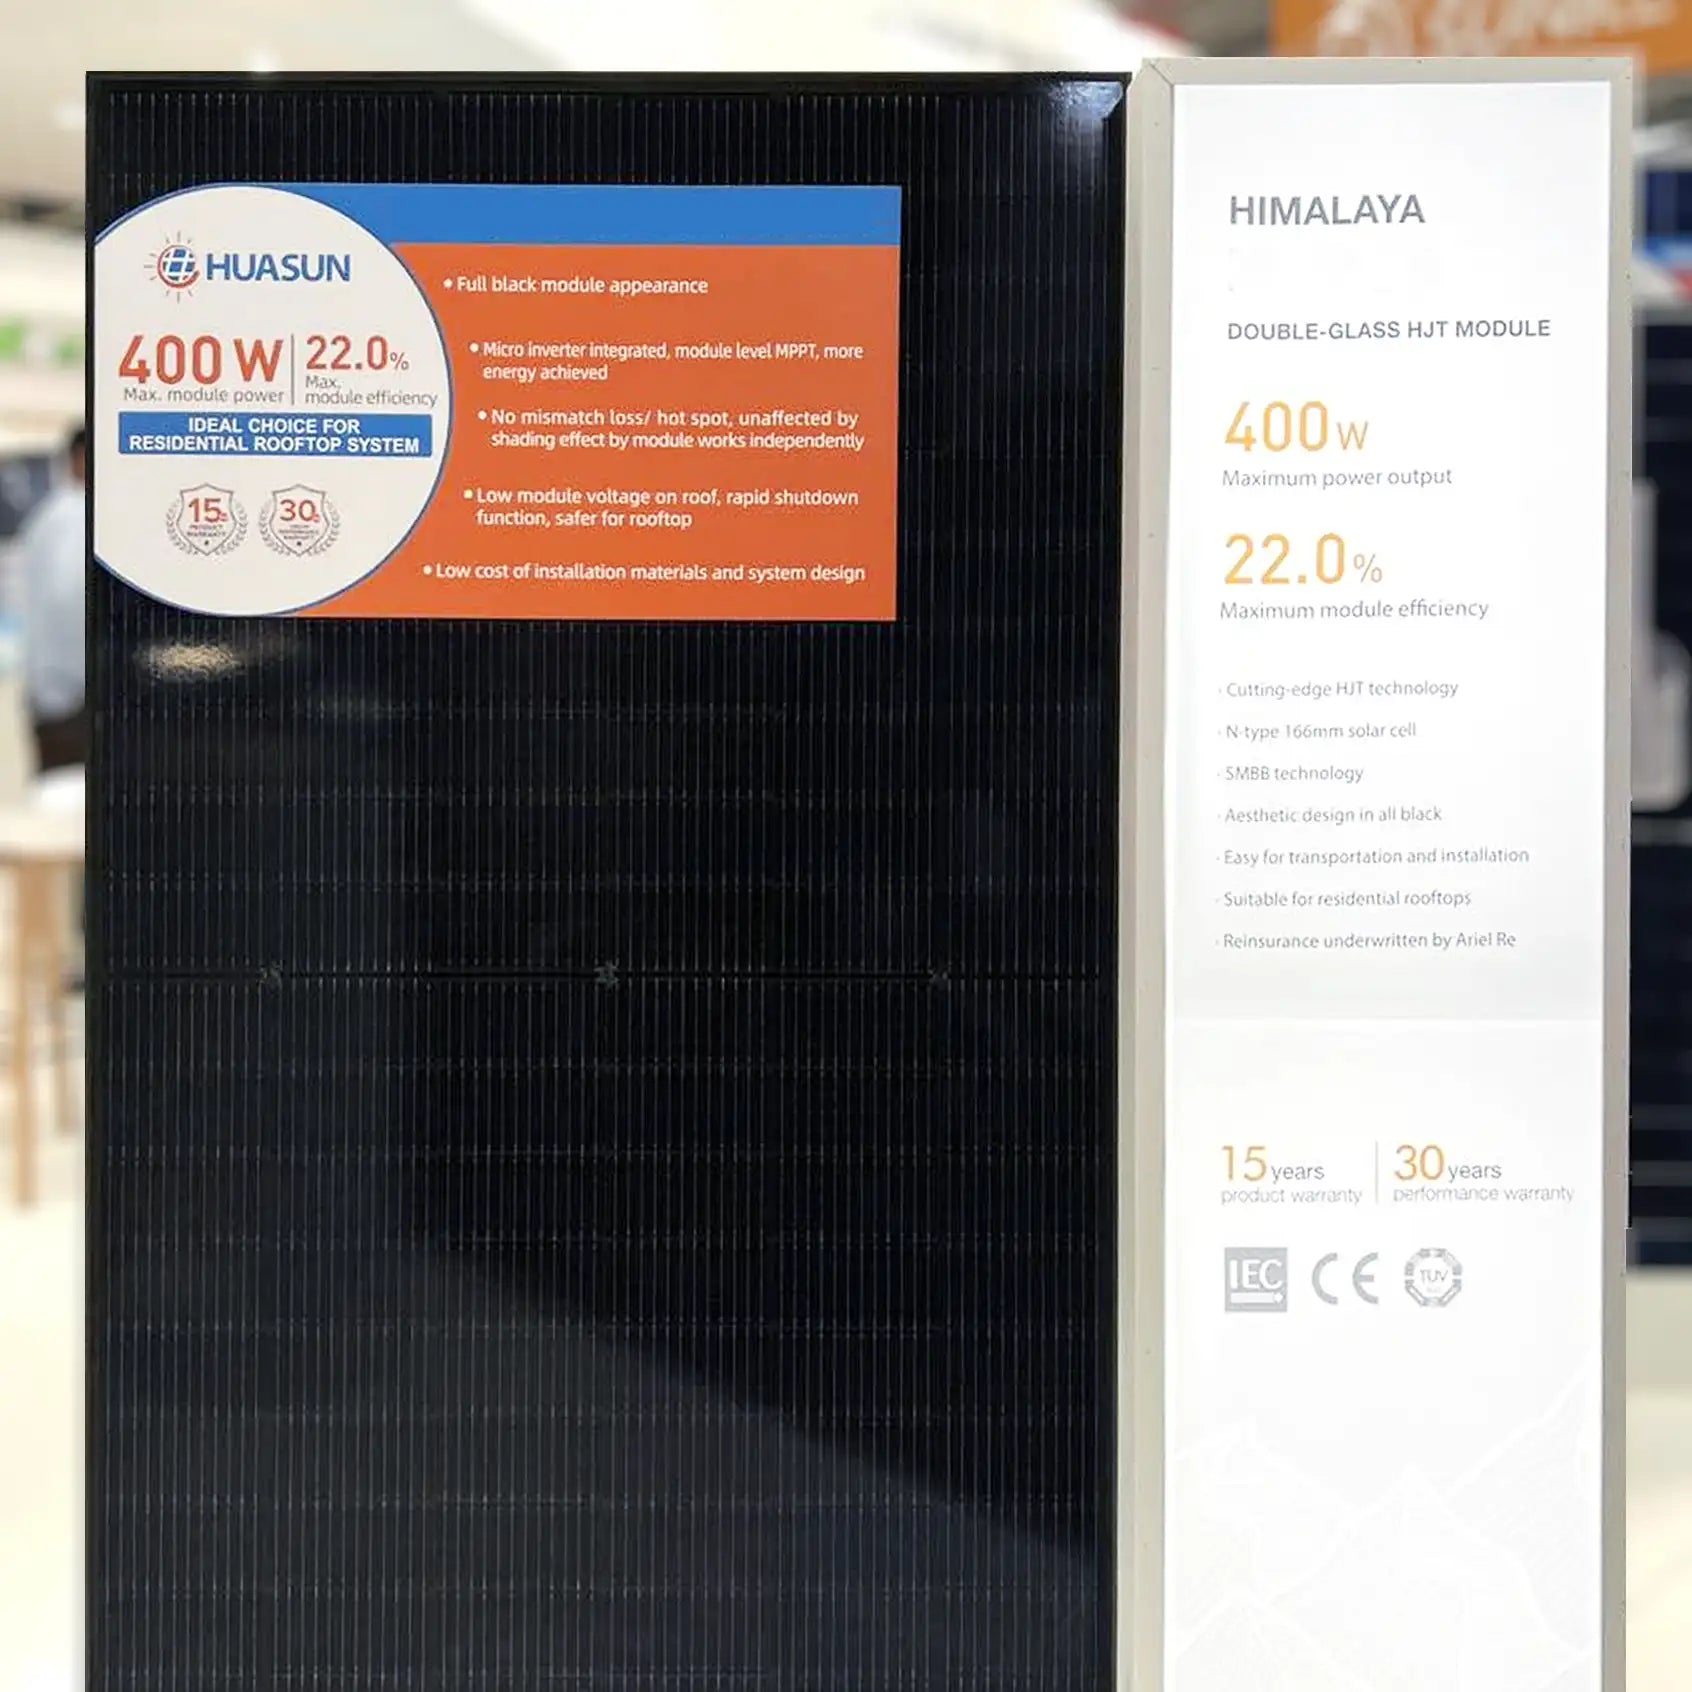 400W MSMDxxxM6-HJT120DSB glass glass bificial solar panel